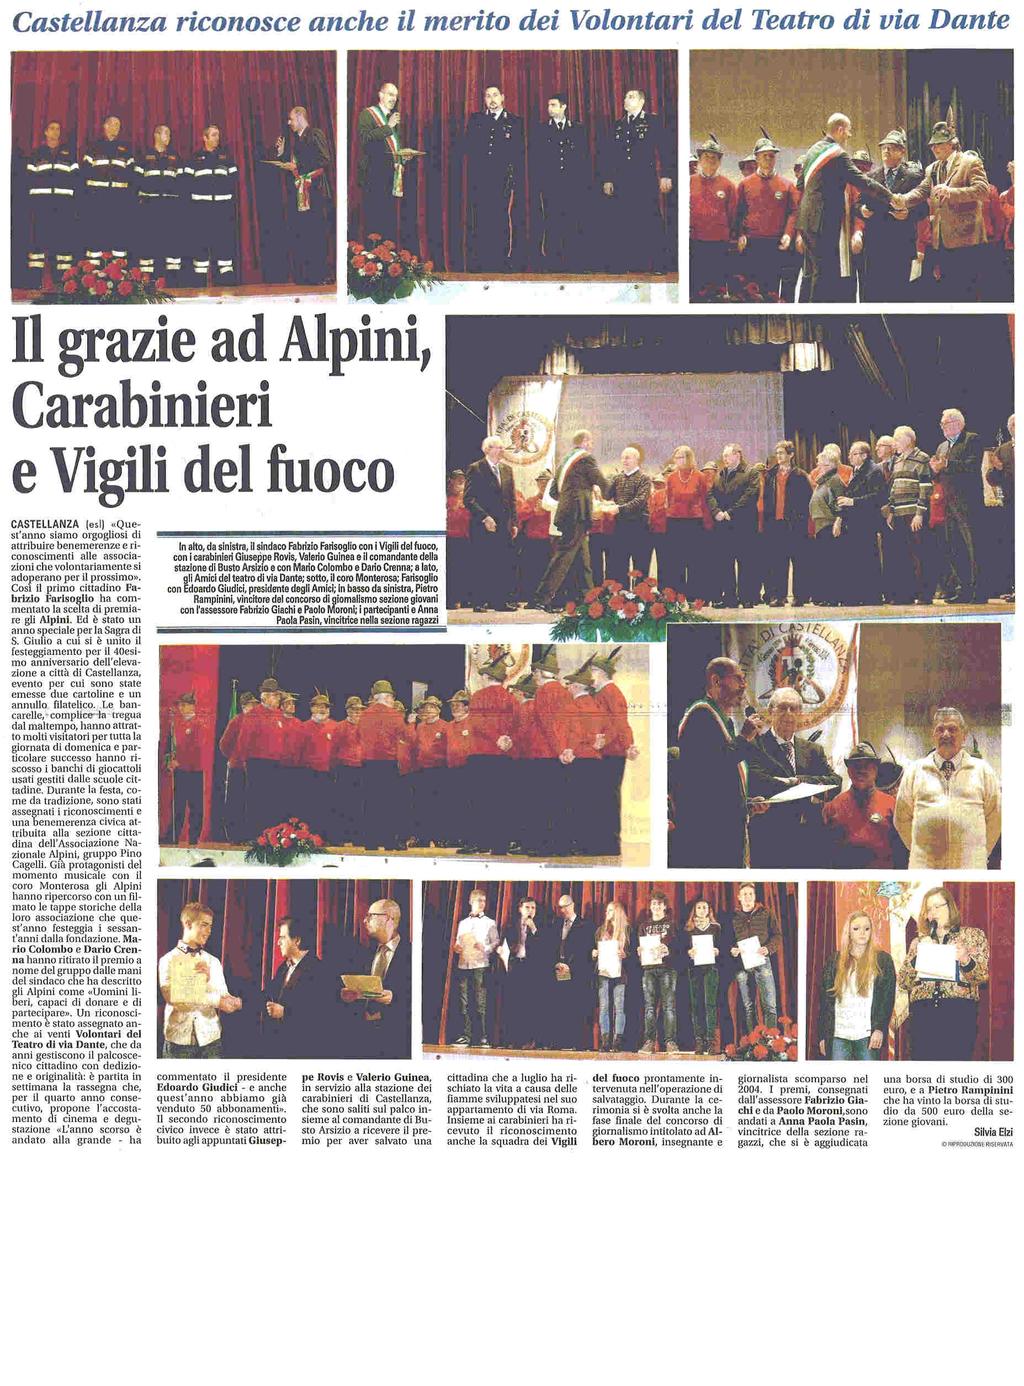 data rassegna 07/02/2014 Castellanza riconosce anche il merito ei Volontari del Teatro di via Dante IL GRAZIE AD ALPINI,